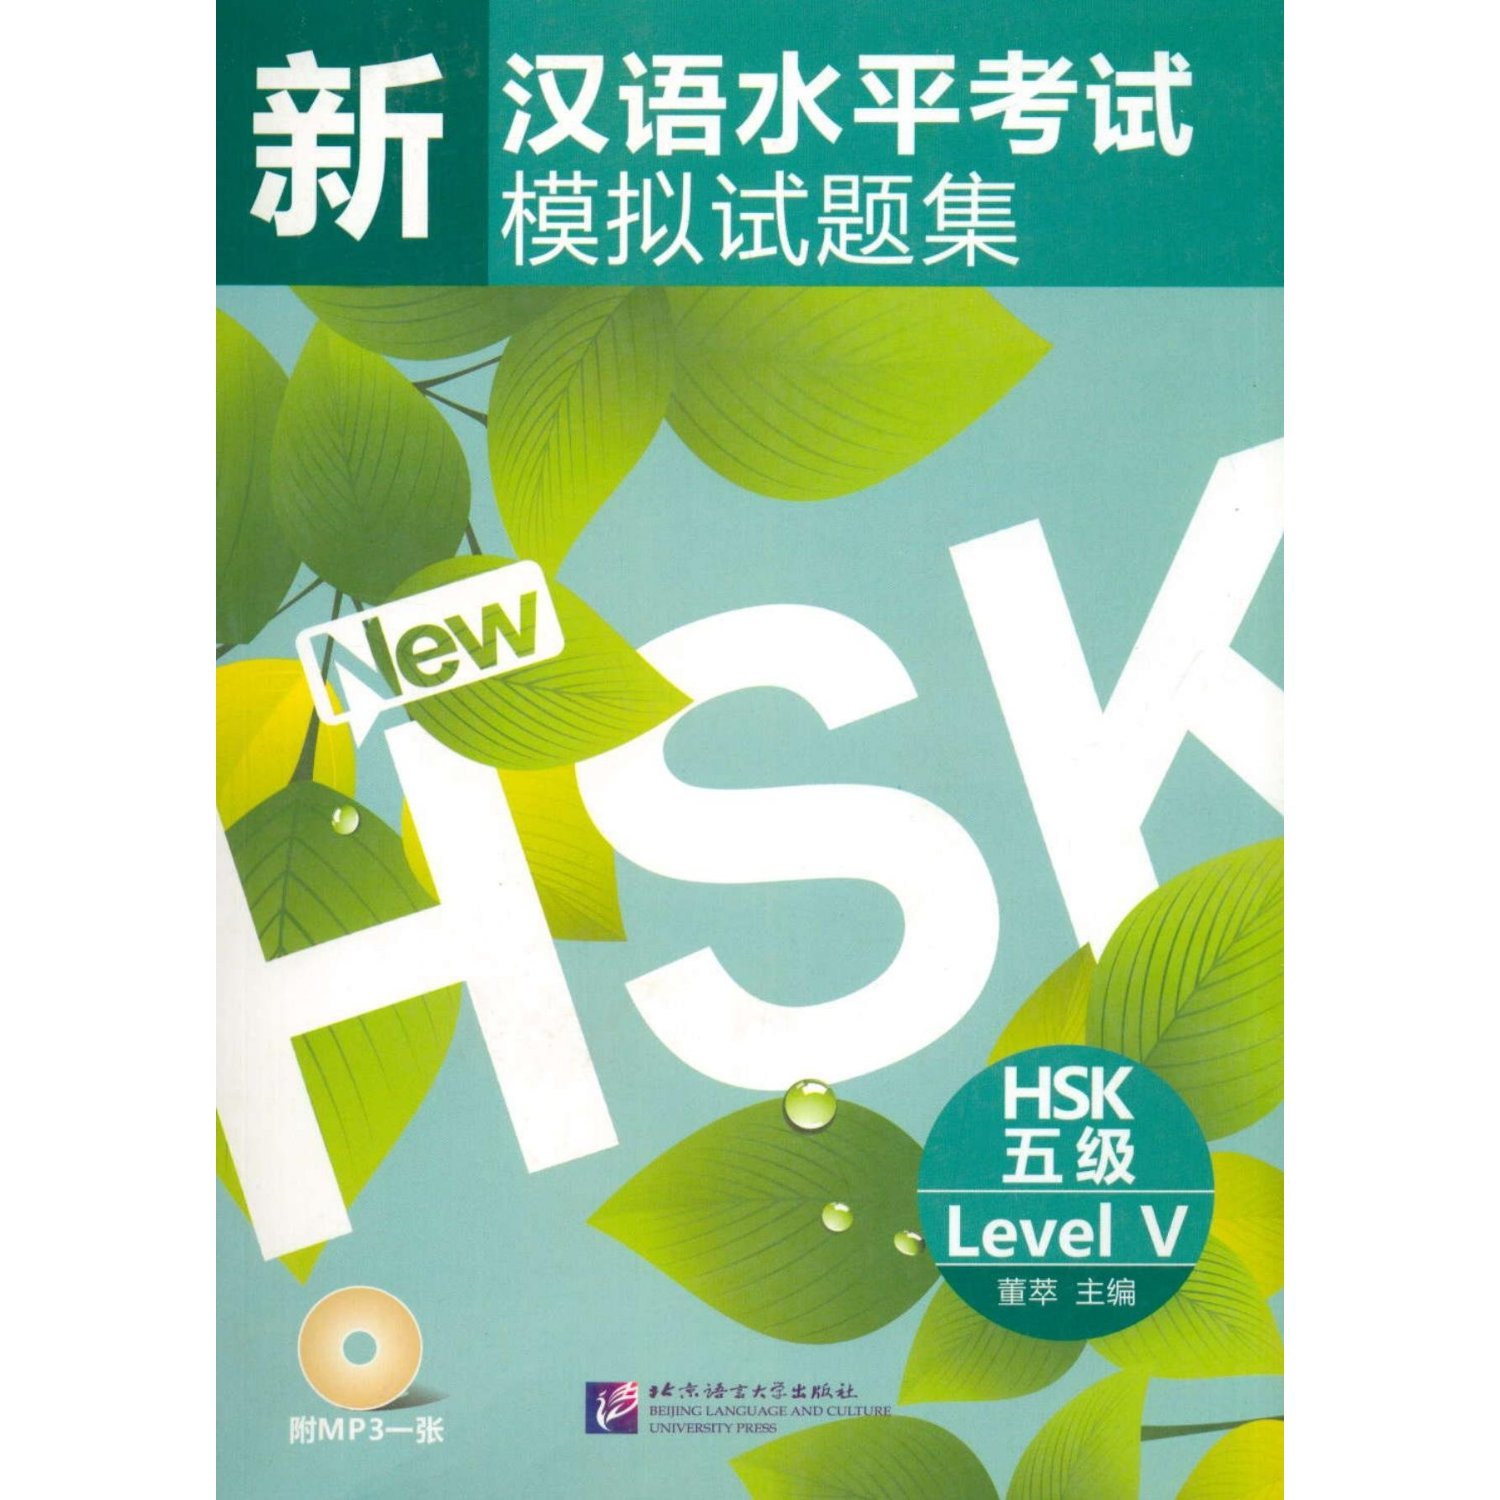 หนังสือเรียนภาษาจีนเตรียมสอบ HSK ระดับ 5 พร้อม MP3